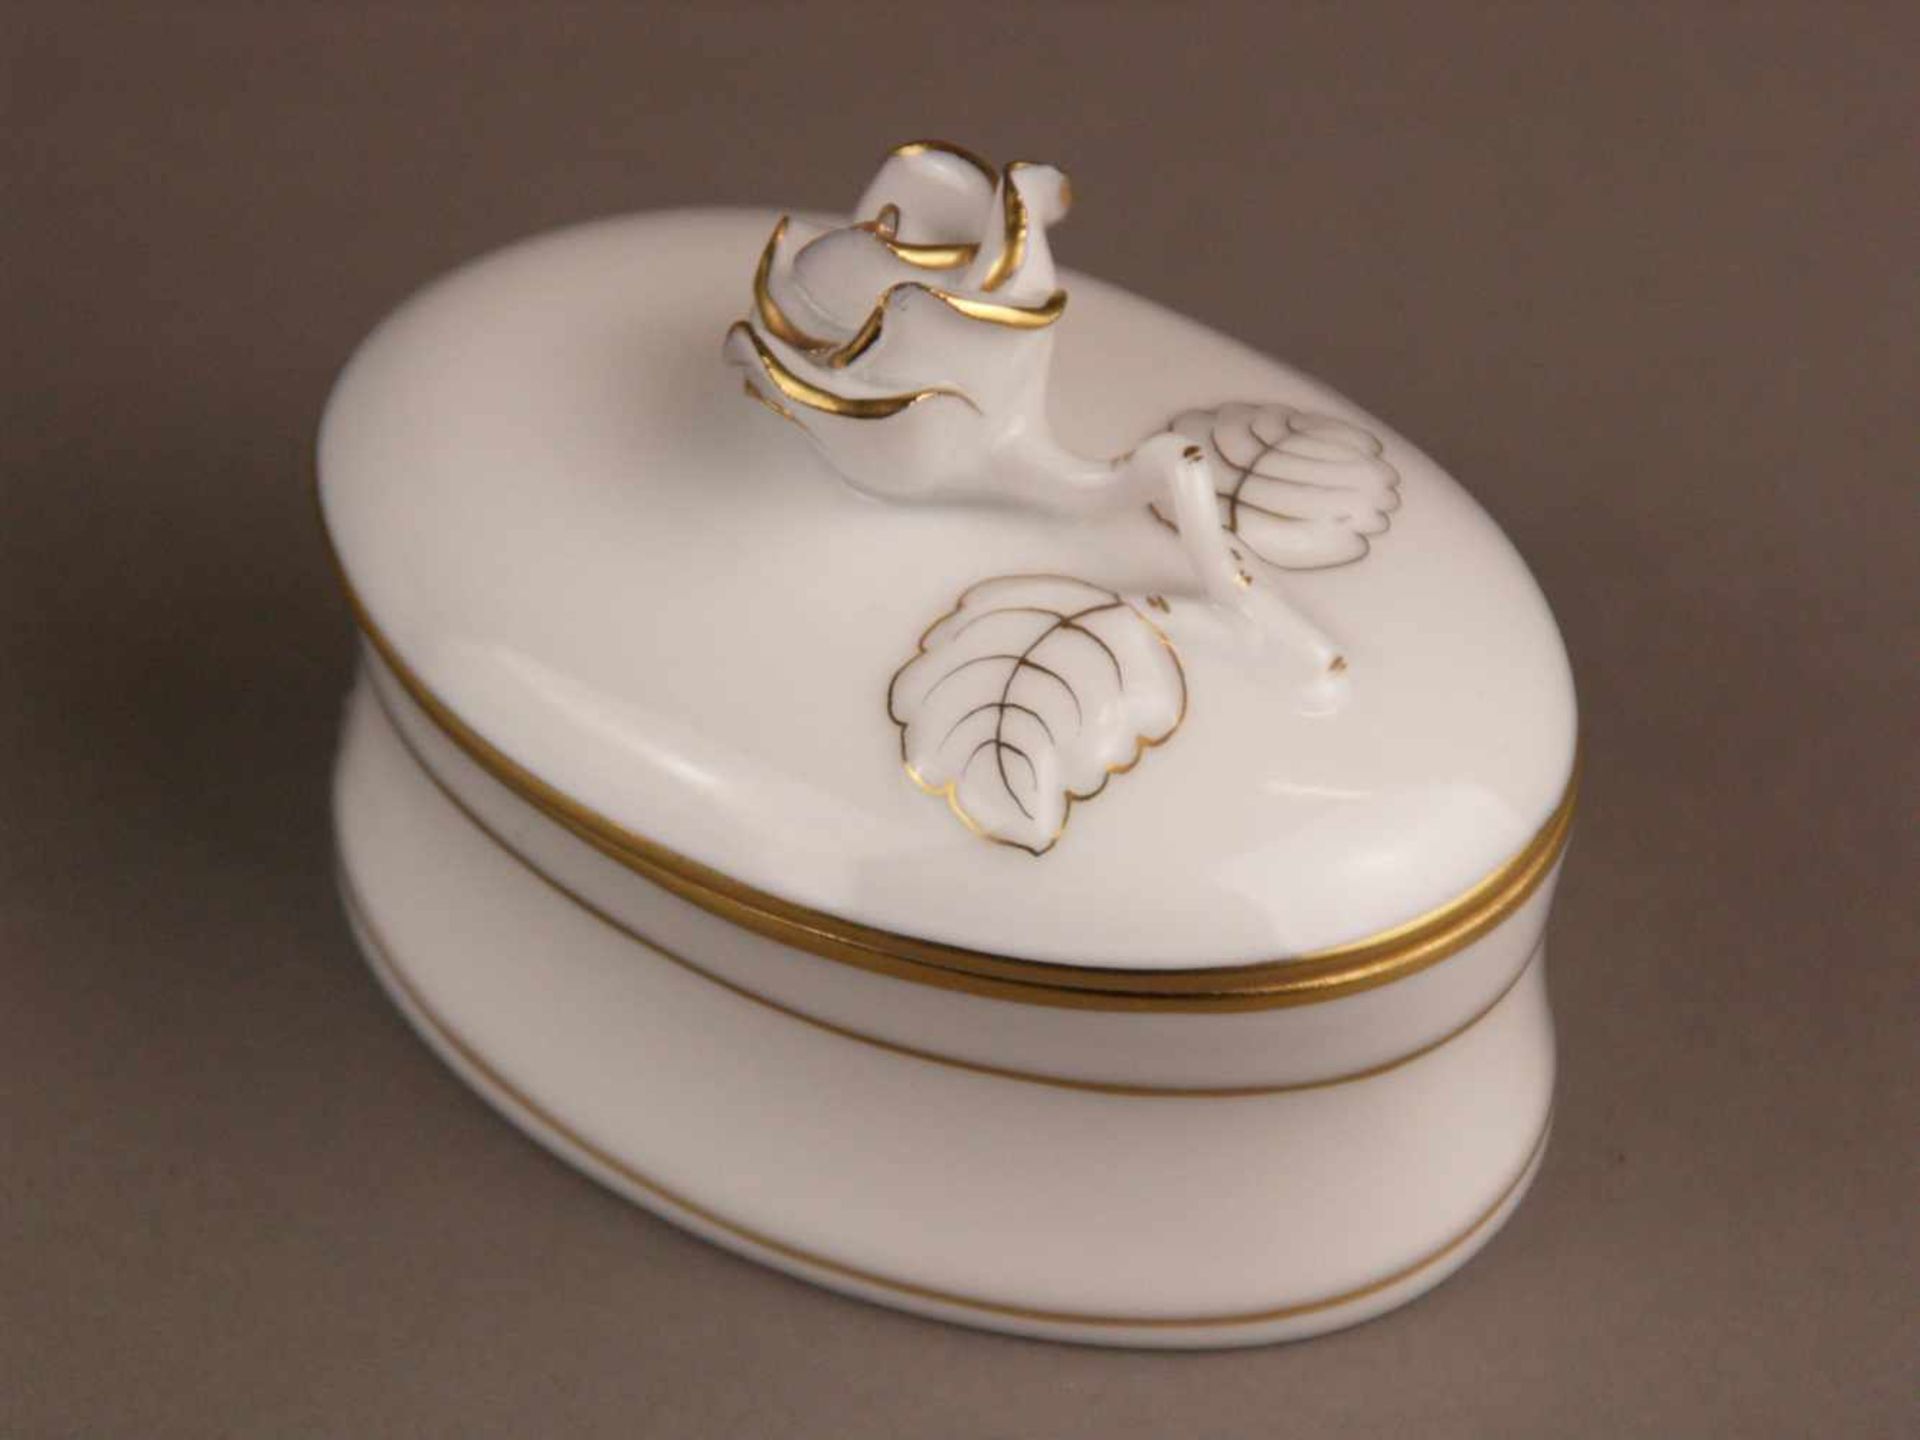 Zwei Deckeldosen - 1x Herend, ovale Form, Porzellan, weiß glasiert, Golddekor, Deckel mit - Bild 3 aus 4